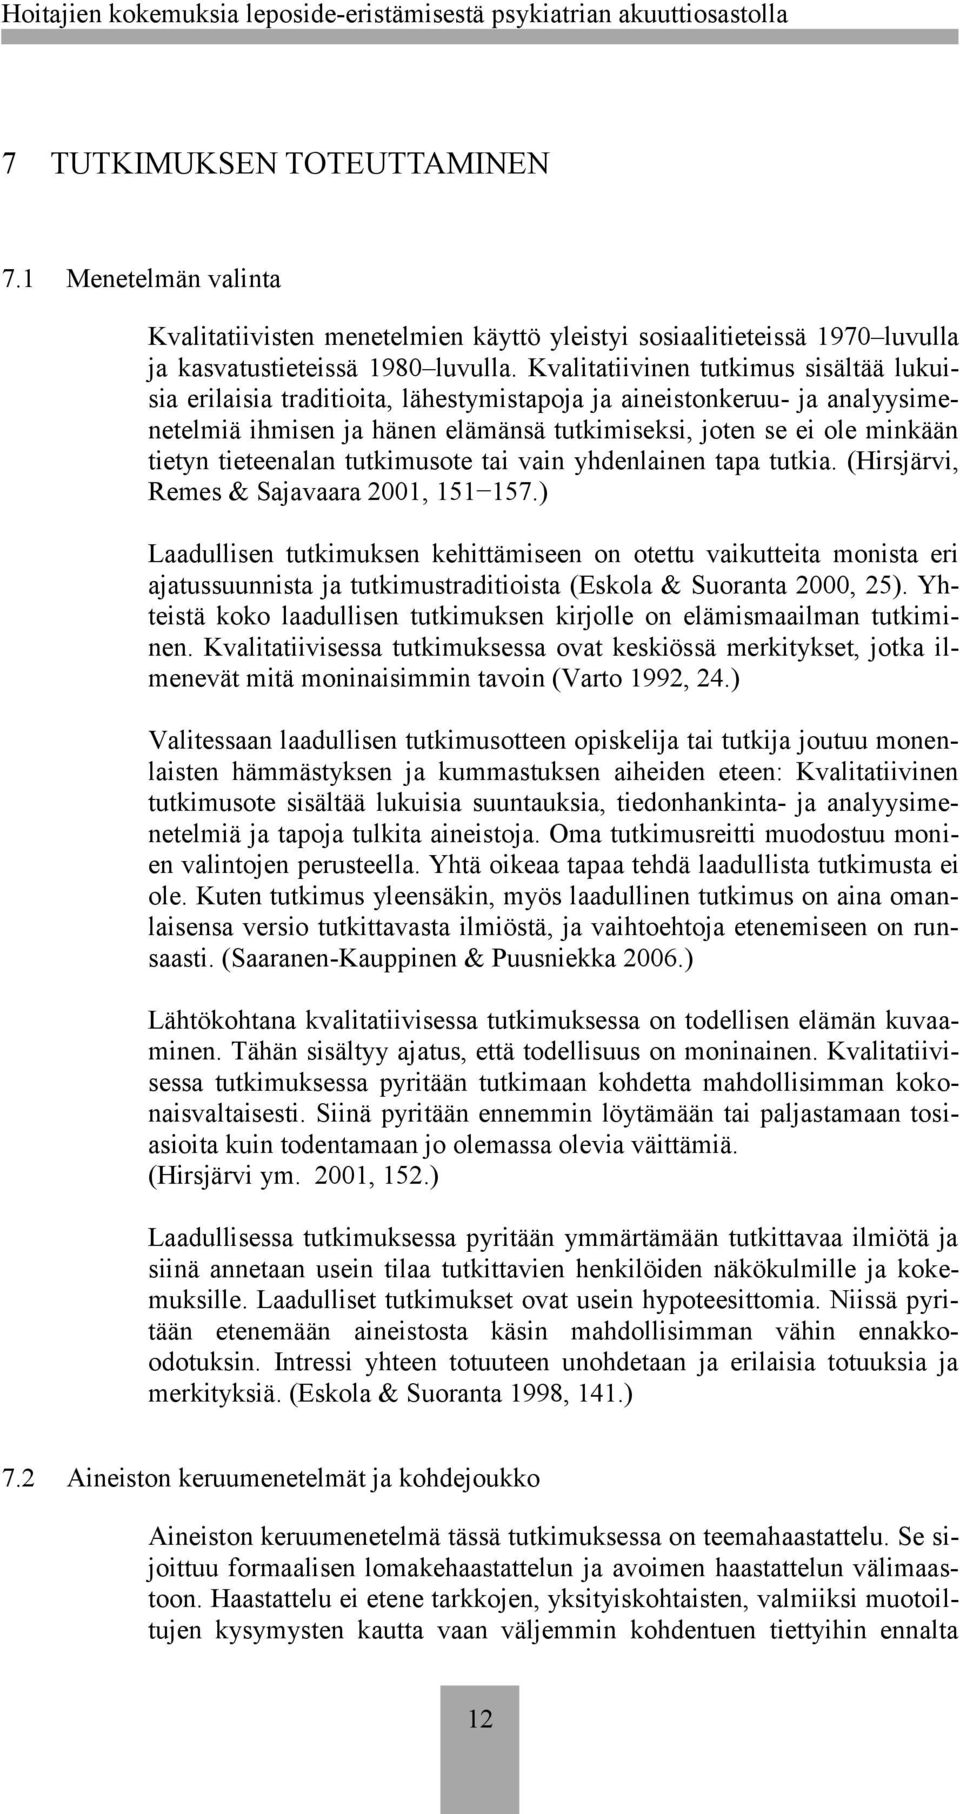 tieteenalan tutkimusote tai vain yhdenlainen tapa tutkia. (Hirsjärvi, Remes & Sajavaara 2001, 151 157.